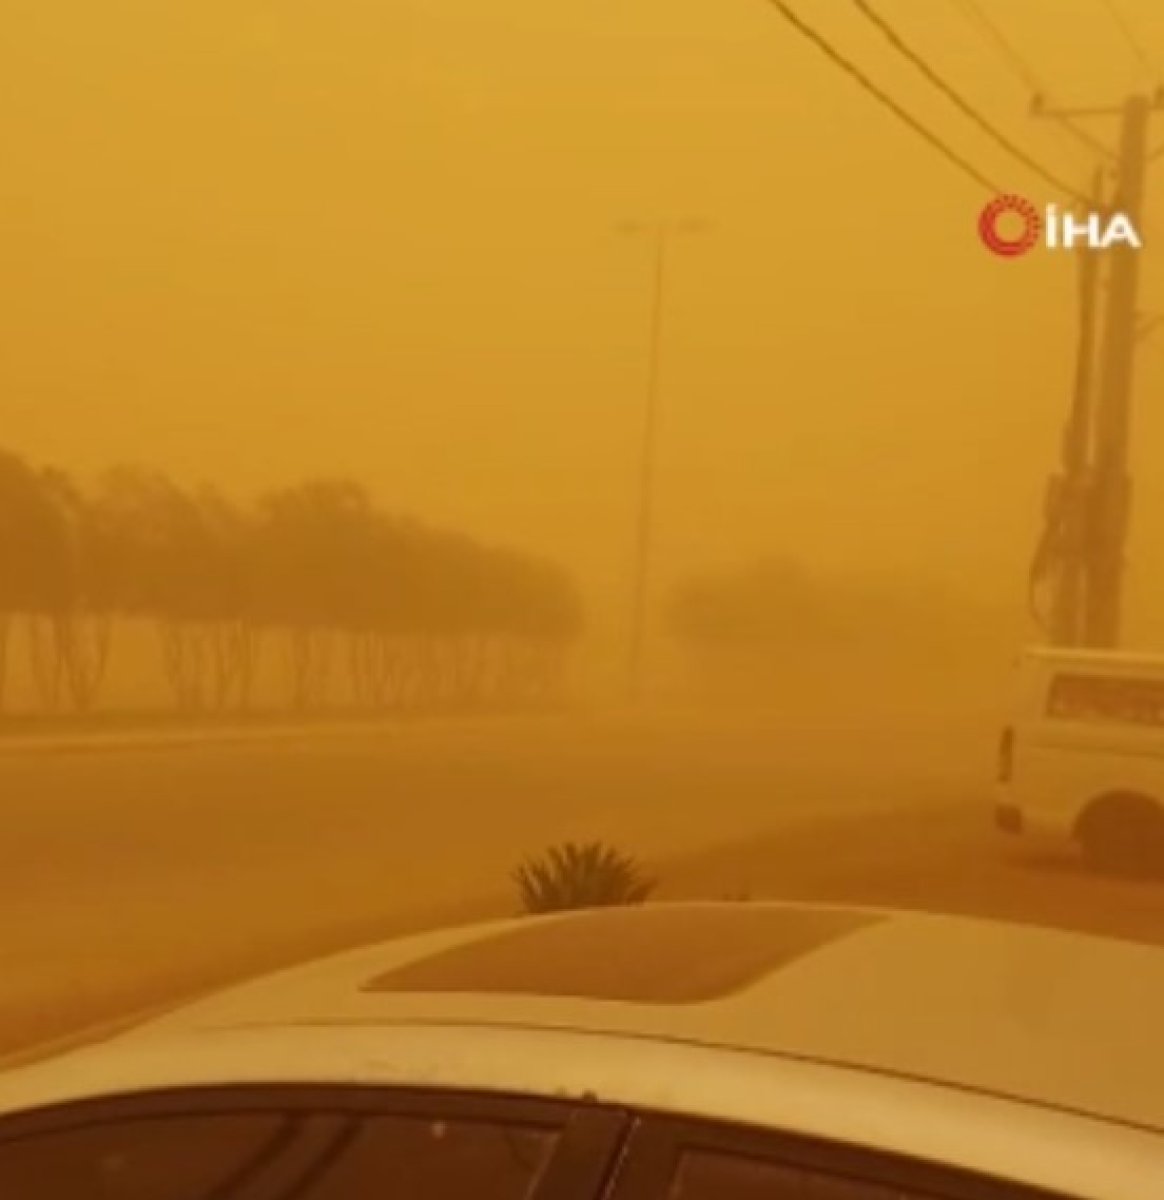 Suudi Arabistan da kum fırtınası #3